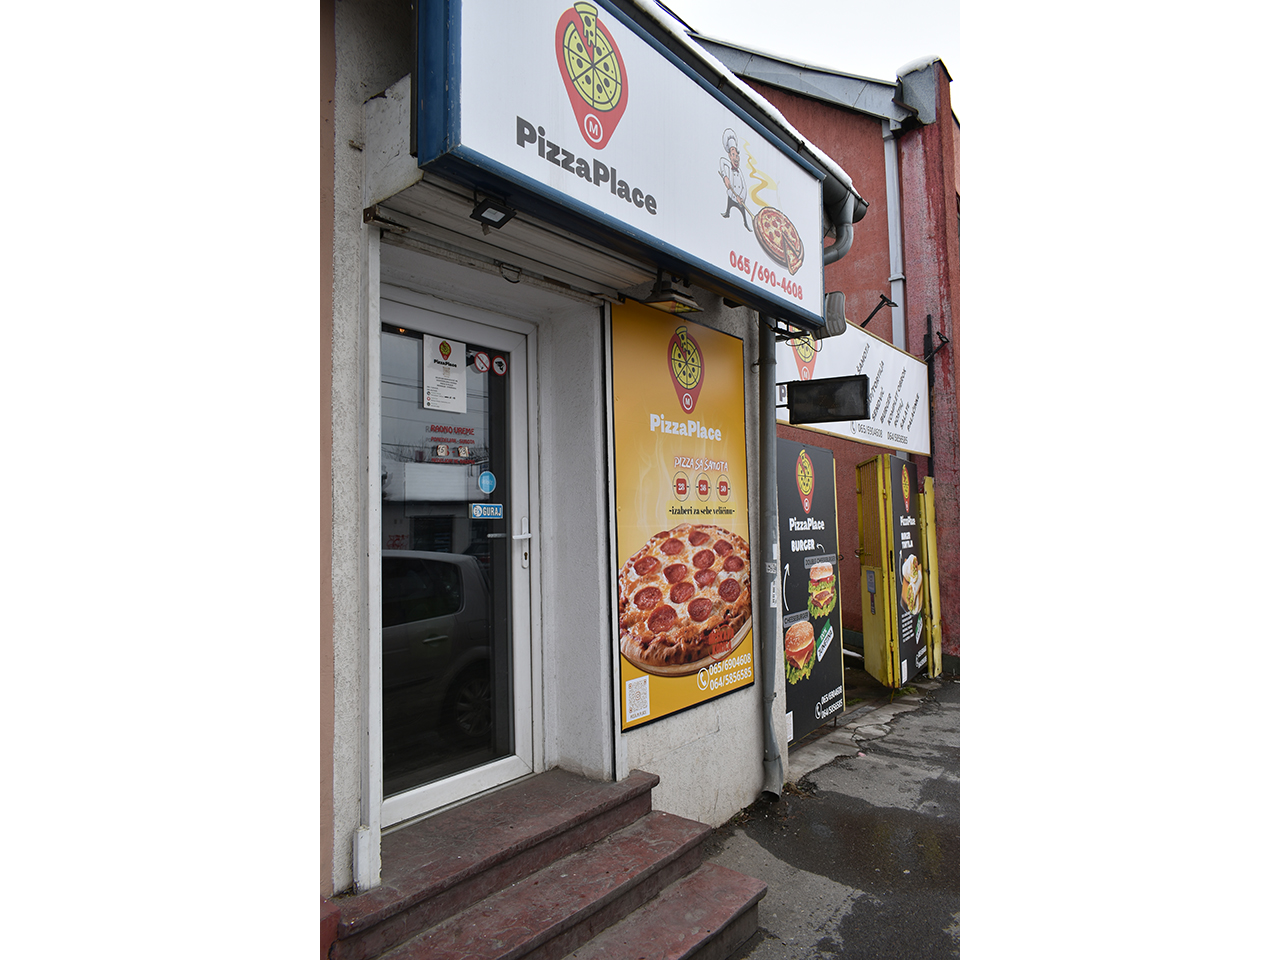 Slika 1 - FAST FOOD PIZZA M PLACE Fast food Beograd